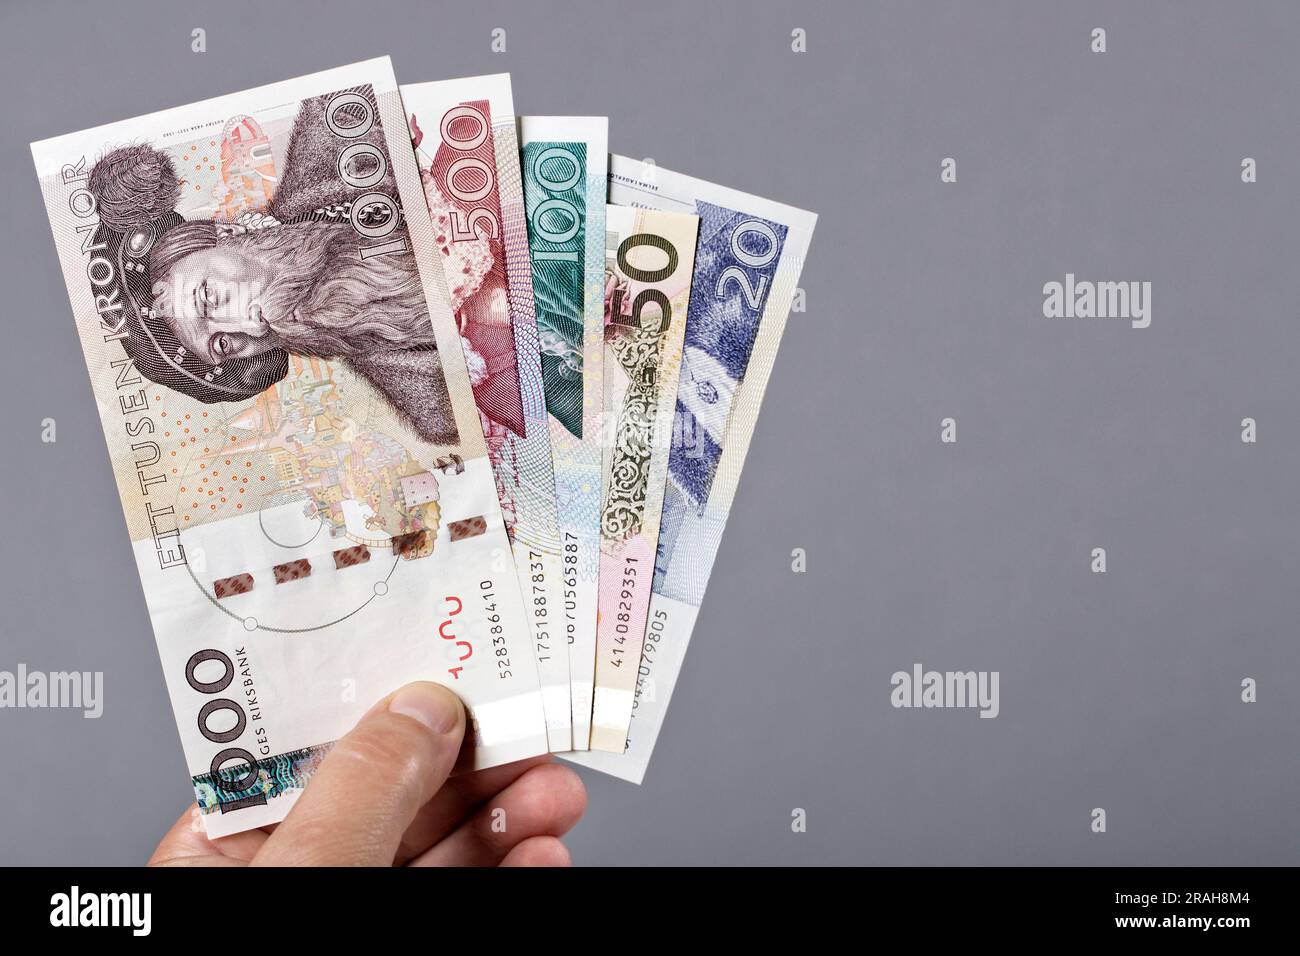 Vieil argent suédois - krona dans la main sur un fond gris Banque D'Images